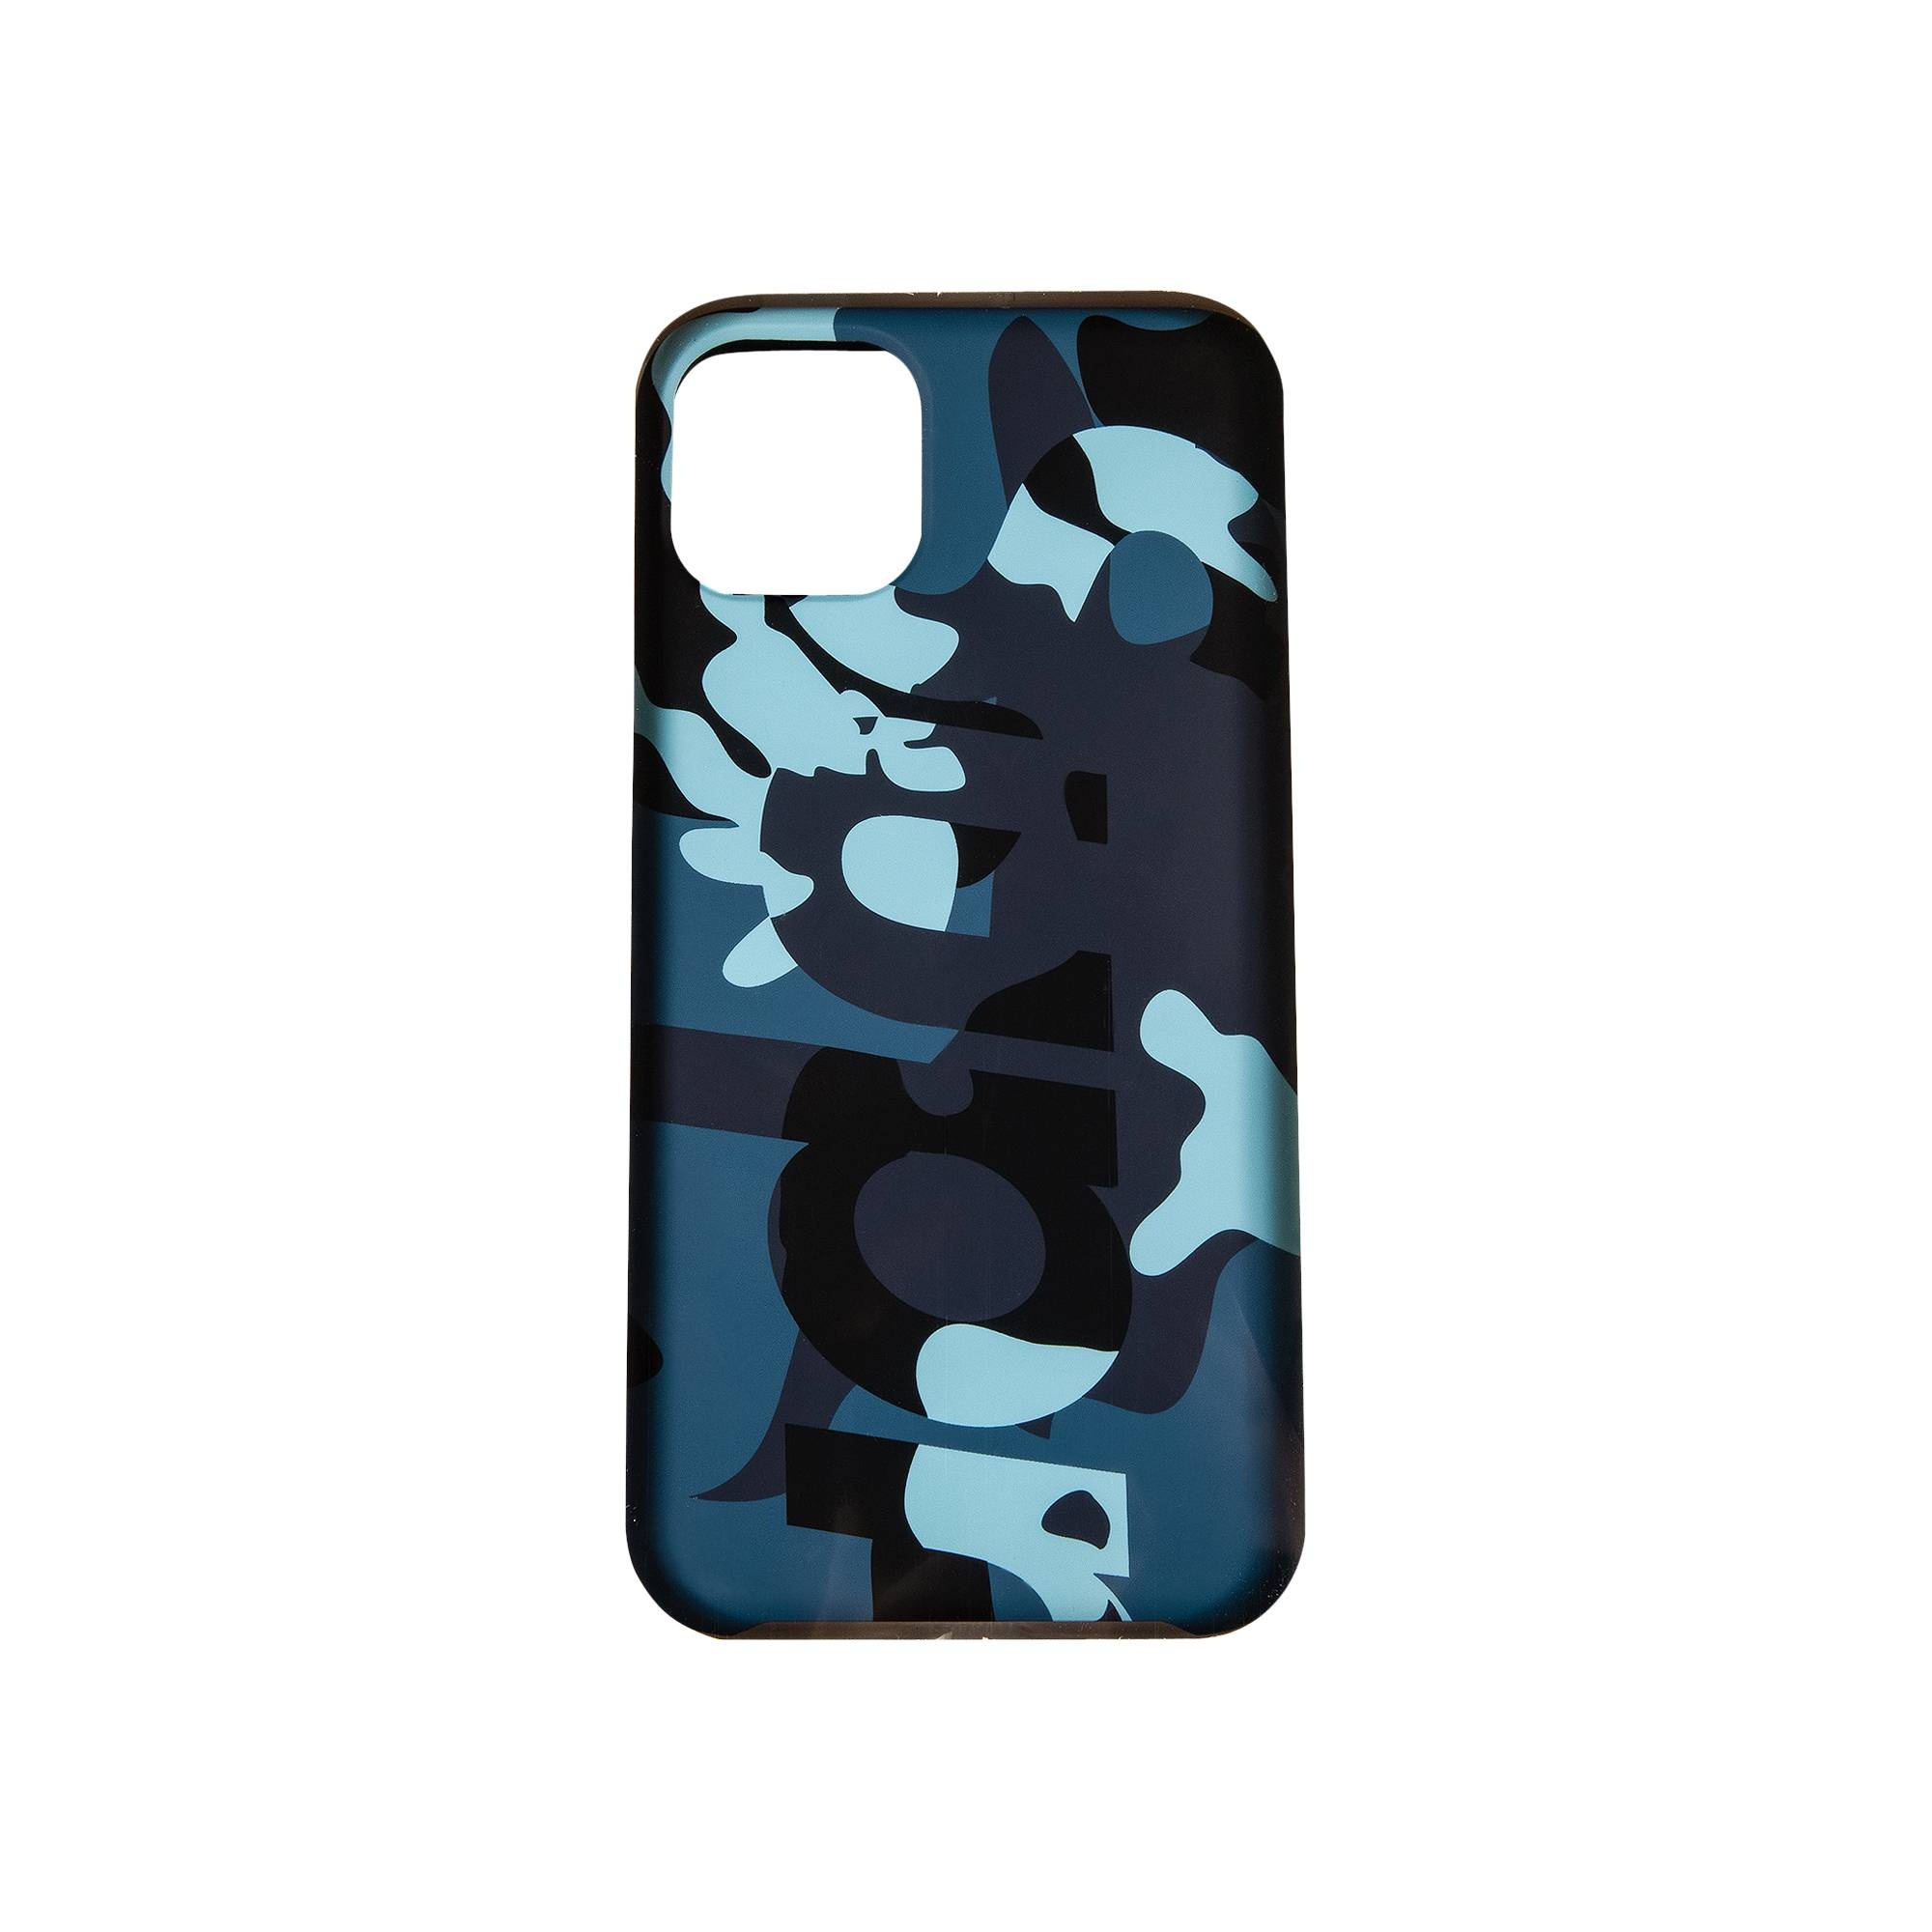 Supreme Camo iPhone 11 Pro Max Case 'Blue Camo' - 1